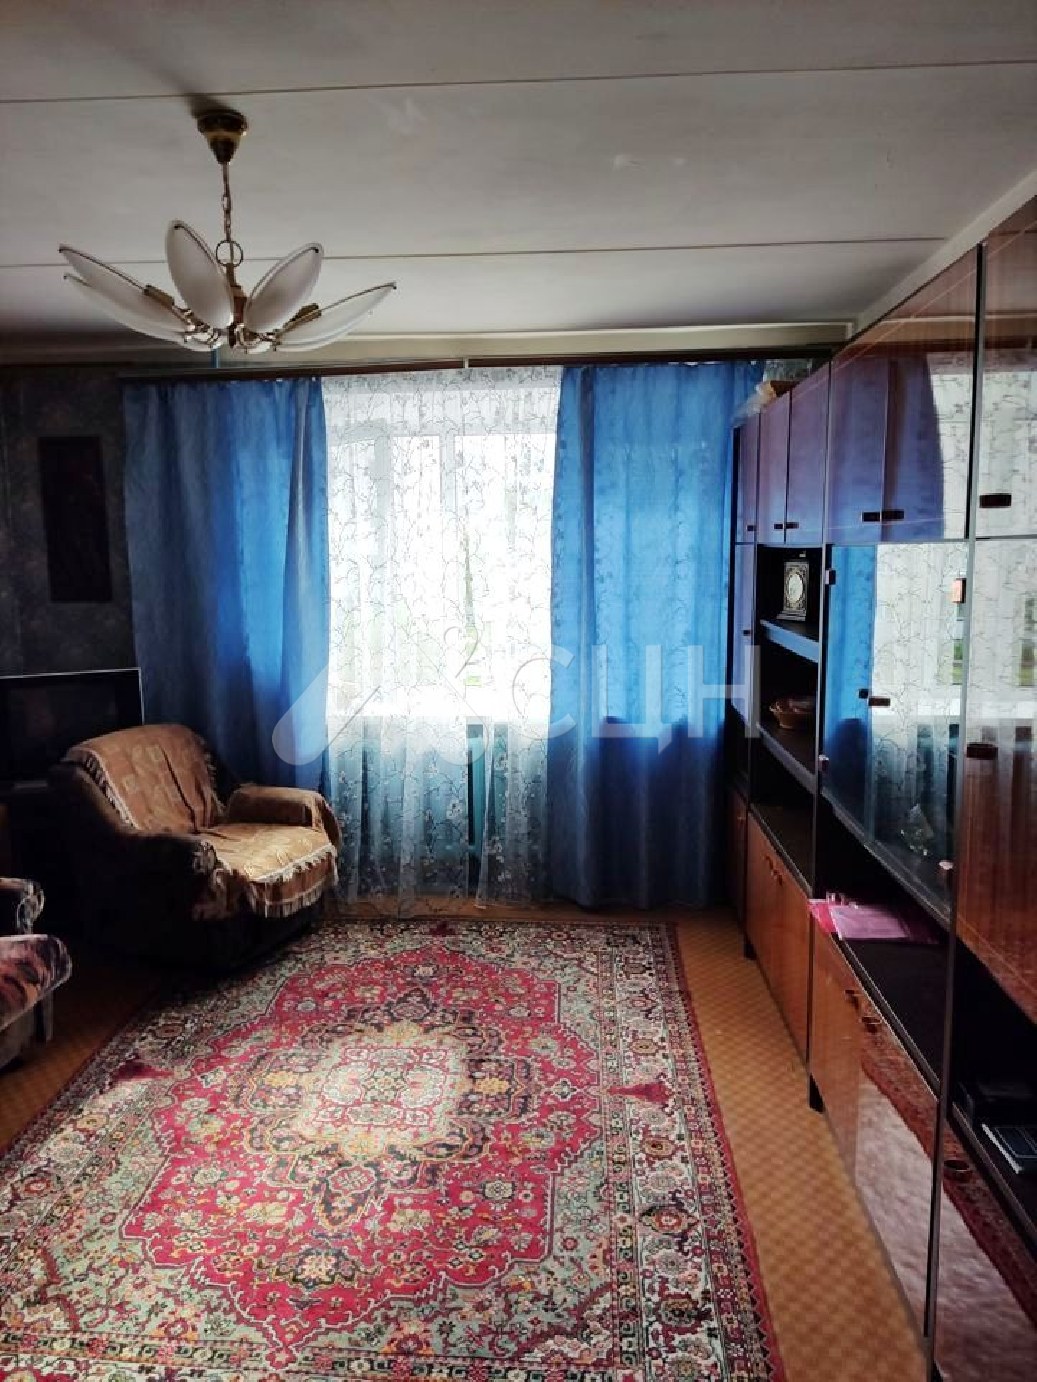 циан саров
: Г. Саров, улица Некрасова, 11, 3-комн квартира, этаж 2 из 9, продажа.